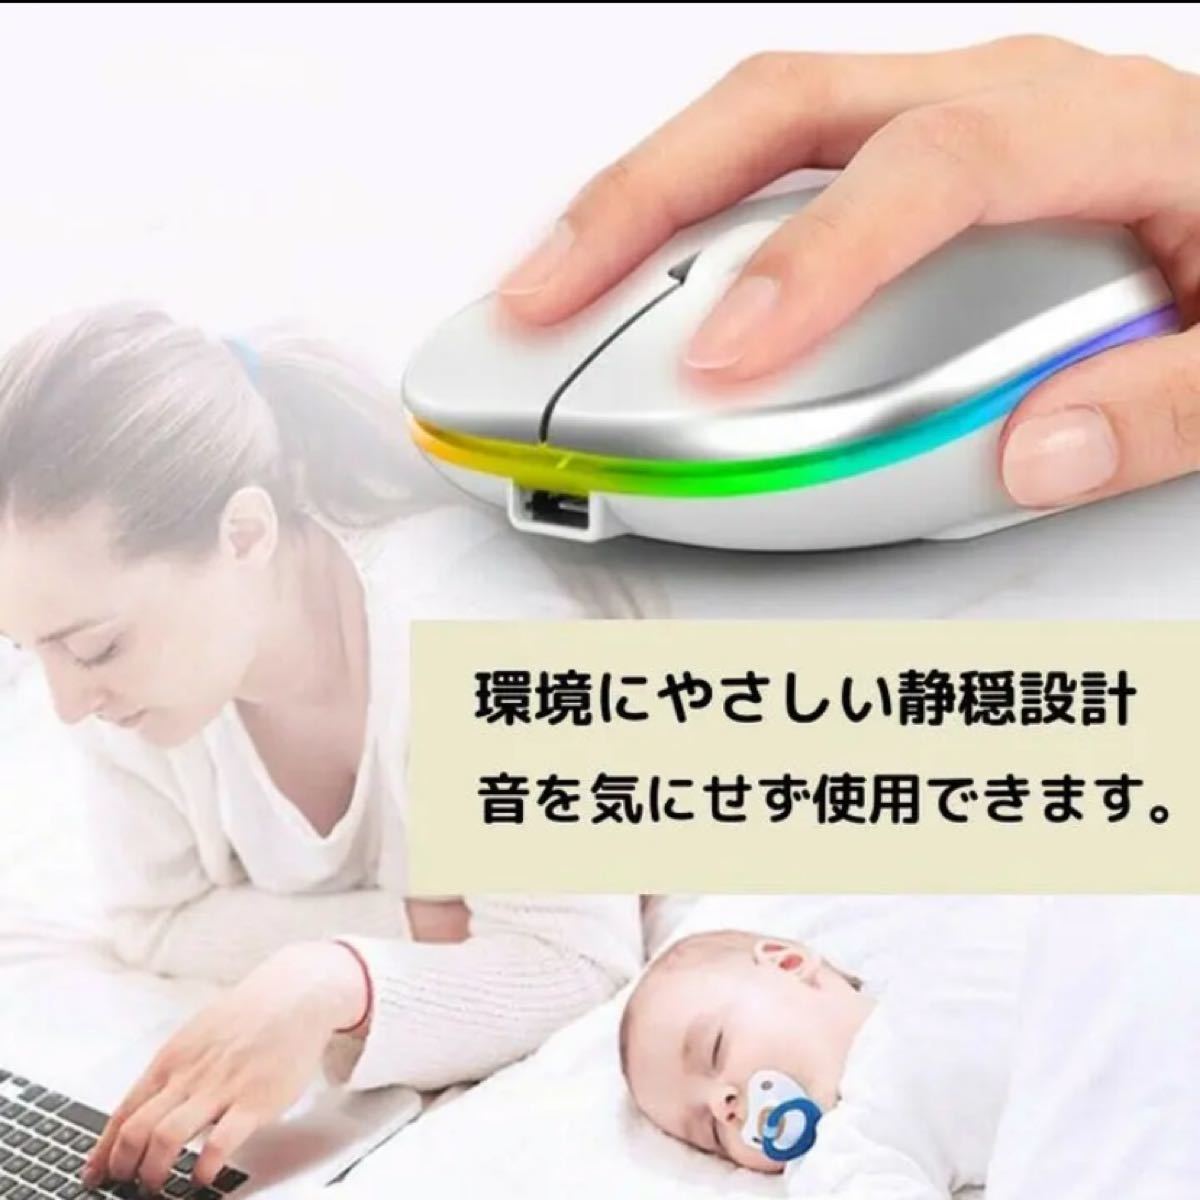 ★【最新版7色LEDランプ】ワイヤレスマウス 静音 軽量 USB 充電式 超薄型